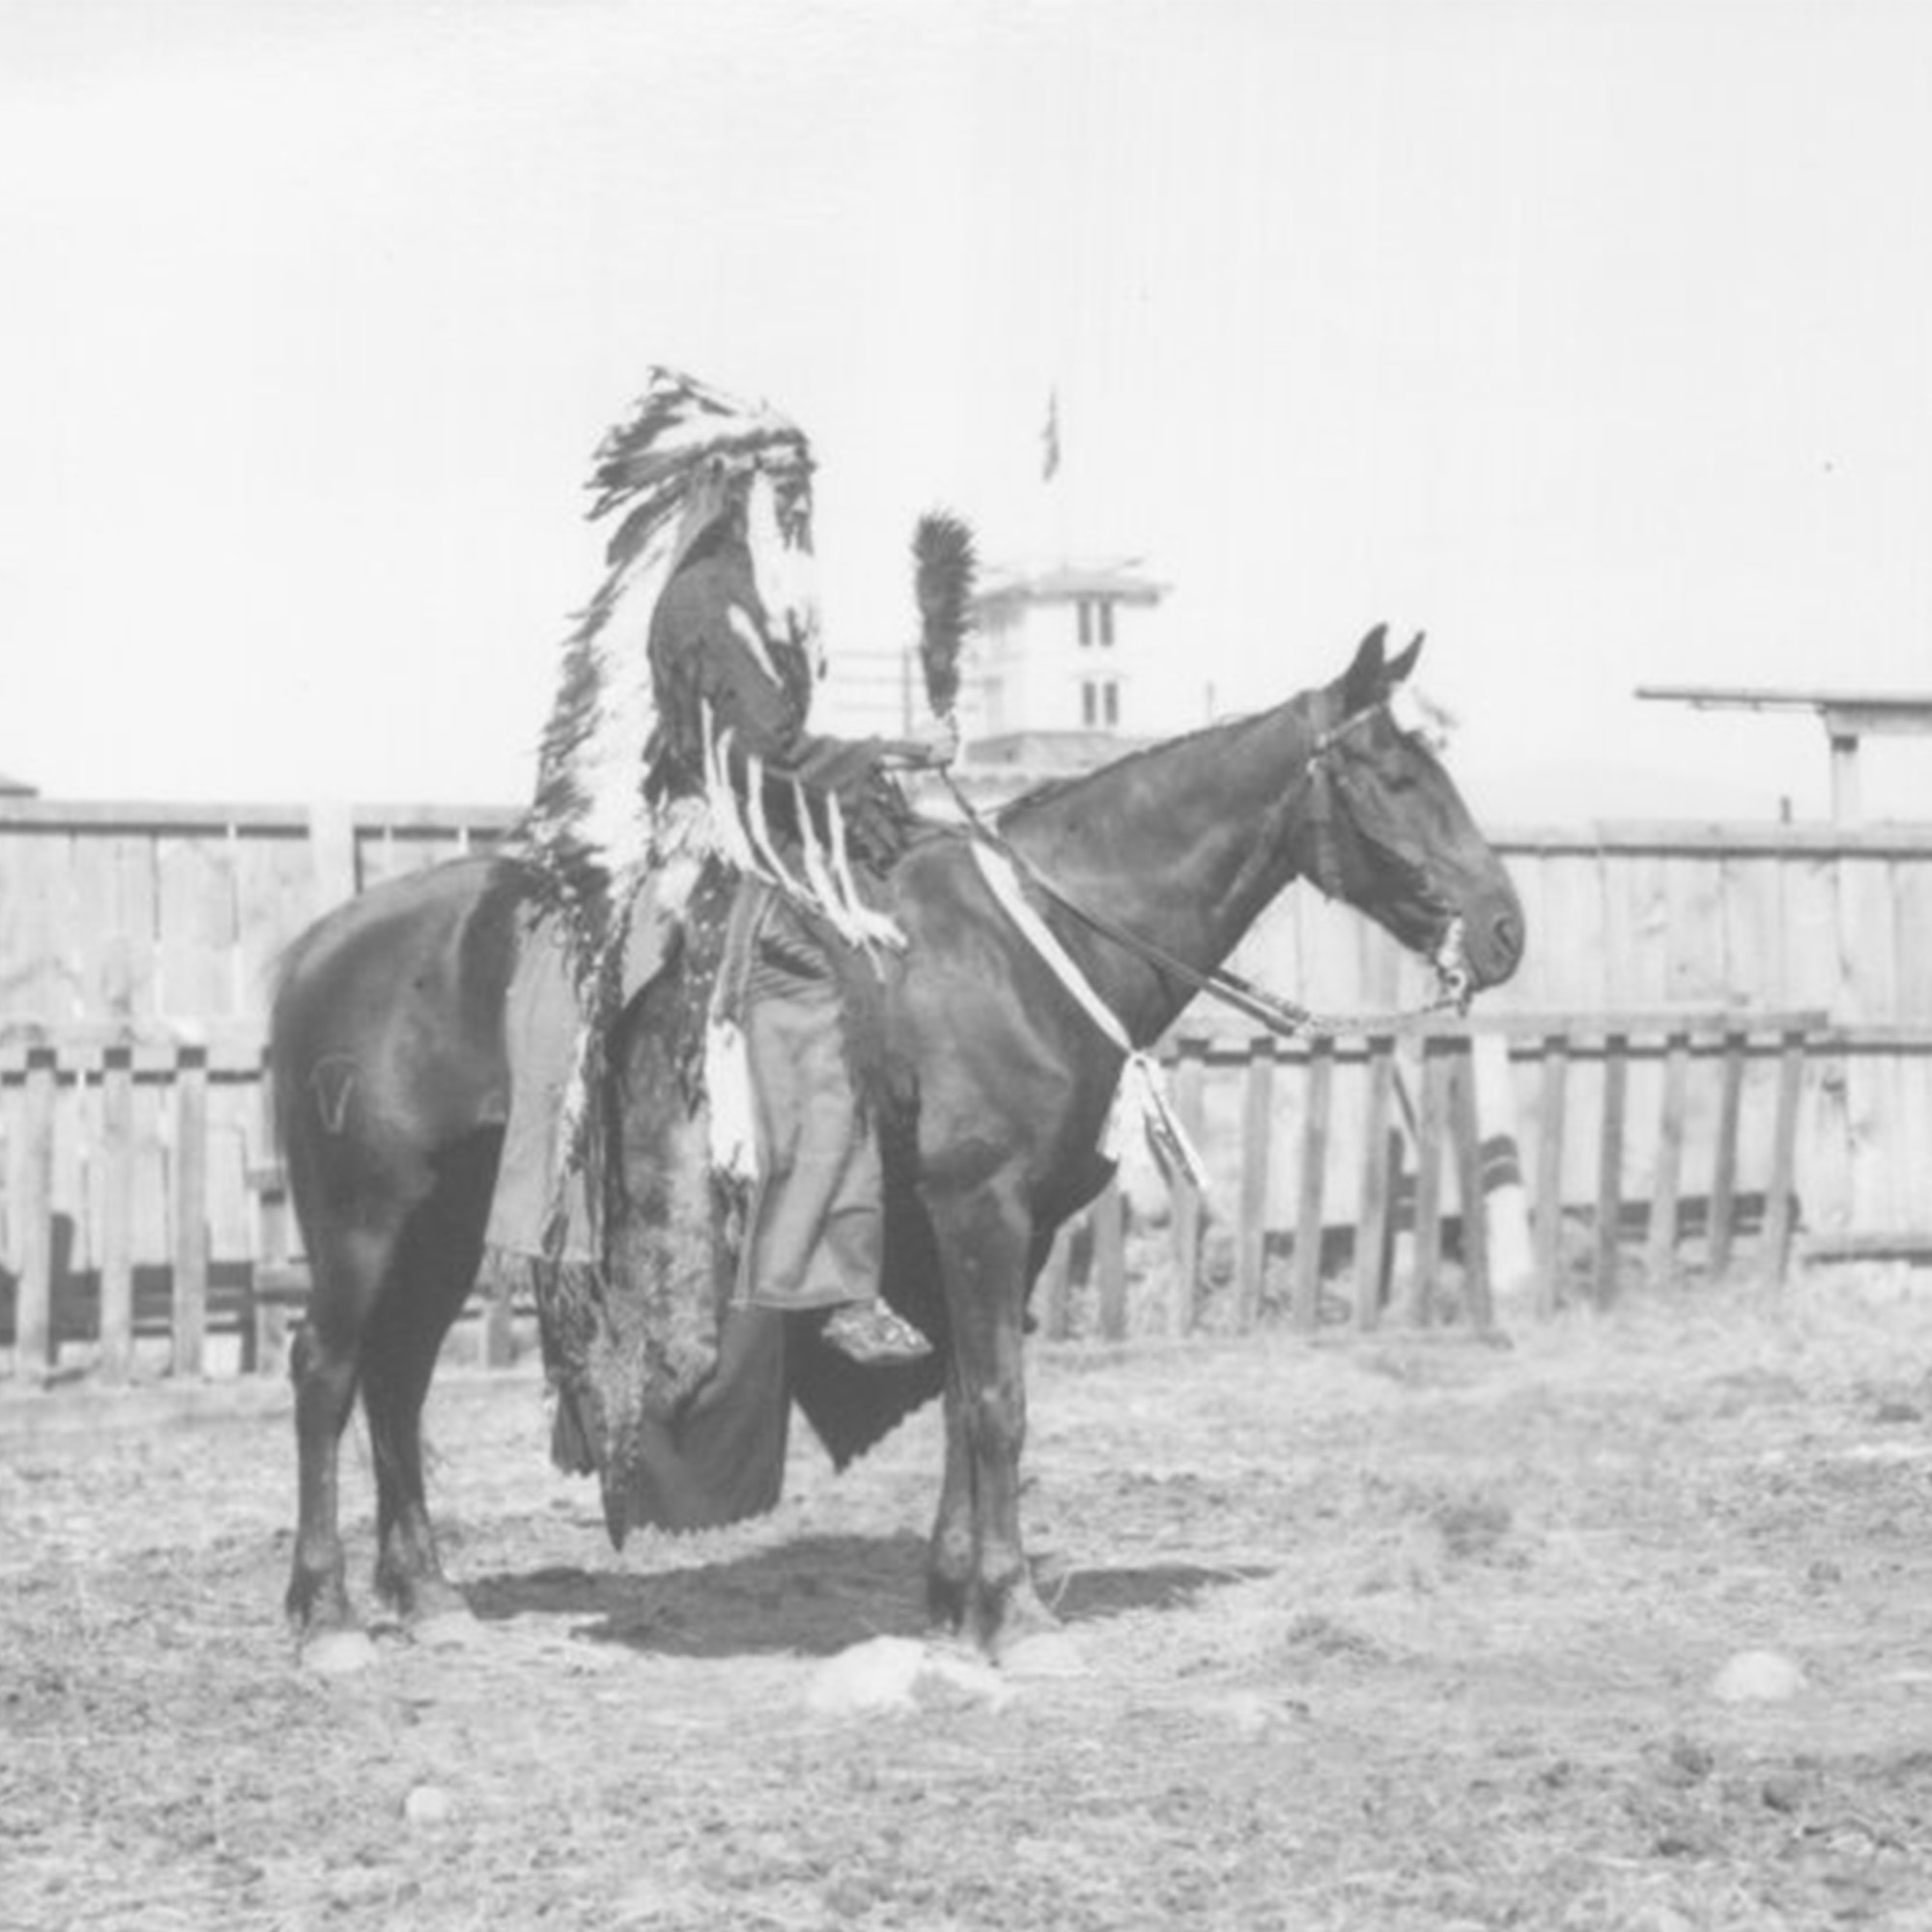 tribal member of horseback